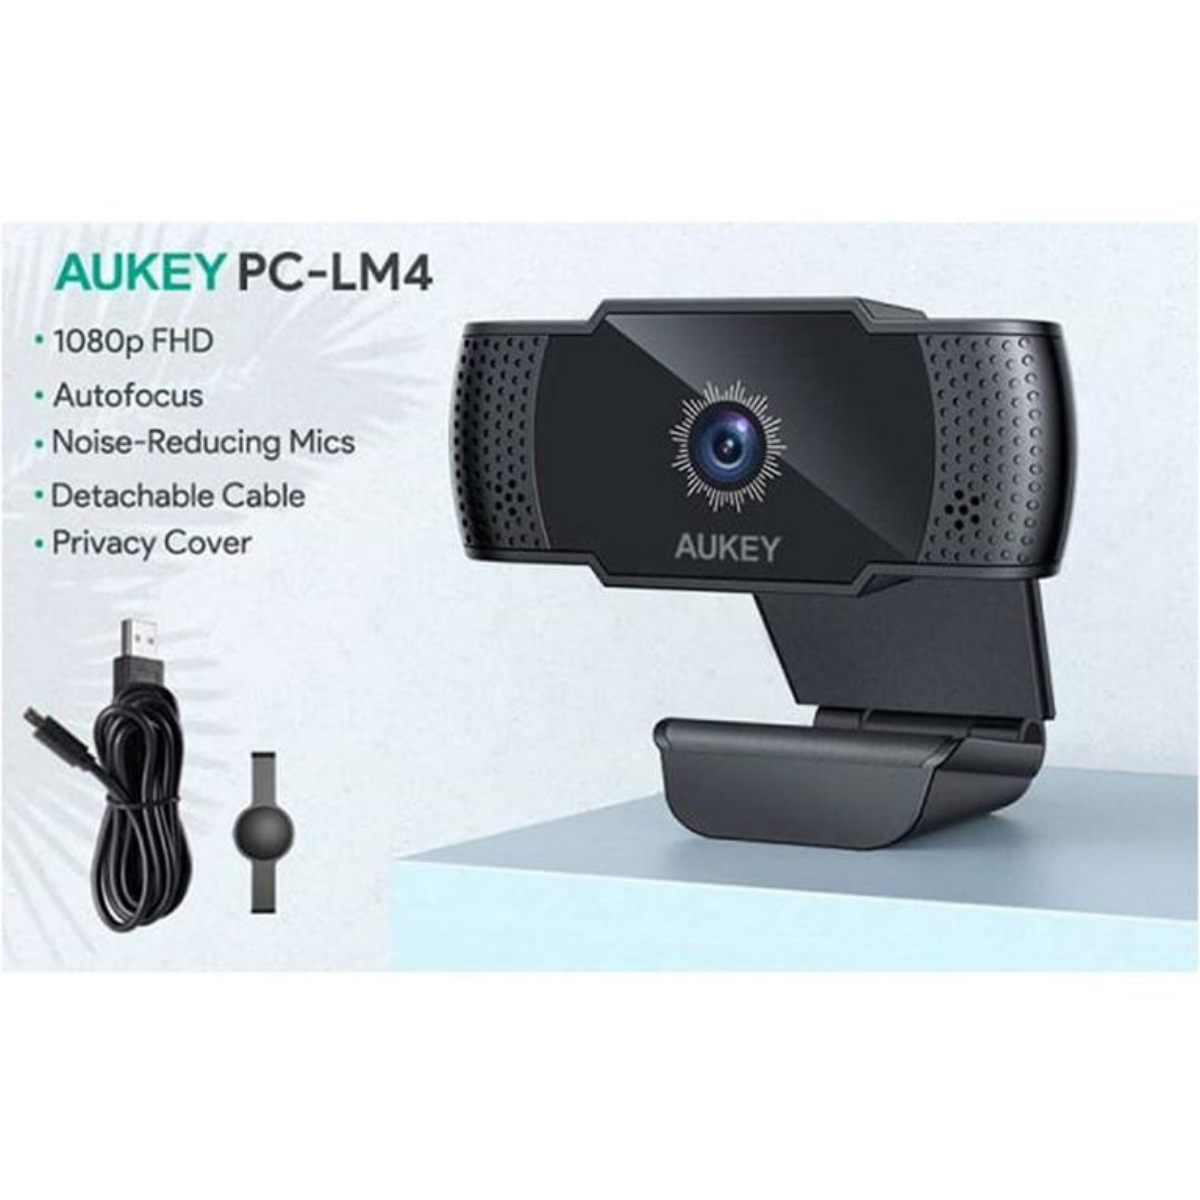 AUKEY PC-LM4 Webkamera